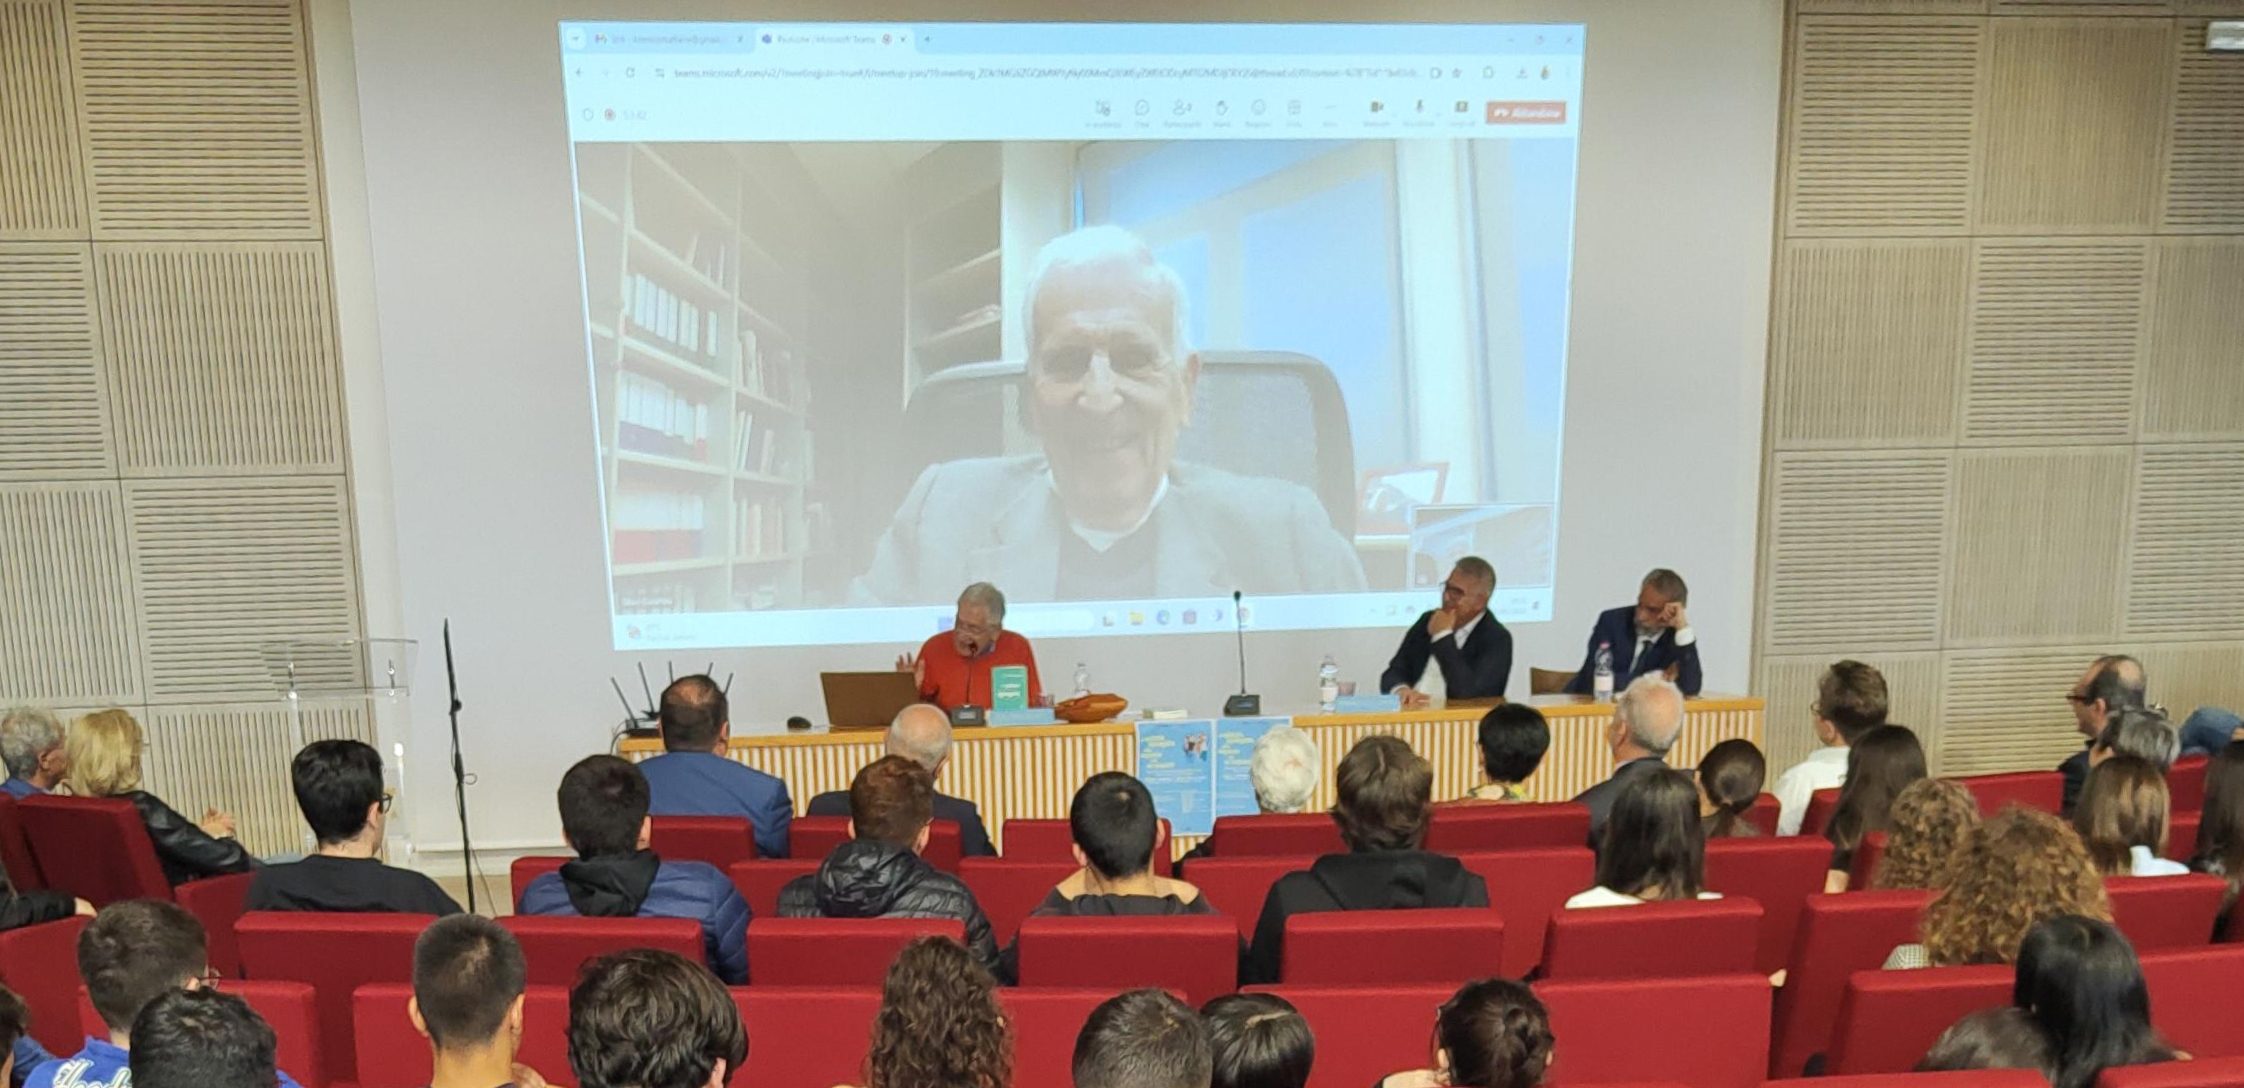 Un momento della videoconferenza con il professor Silvio Garattini.